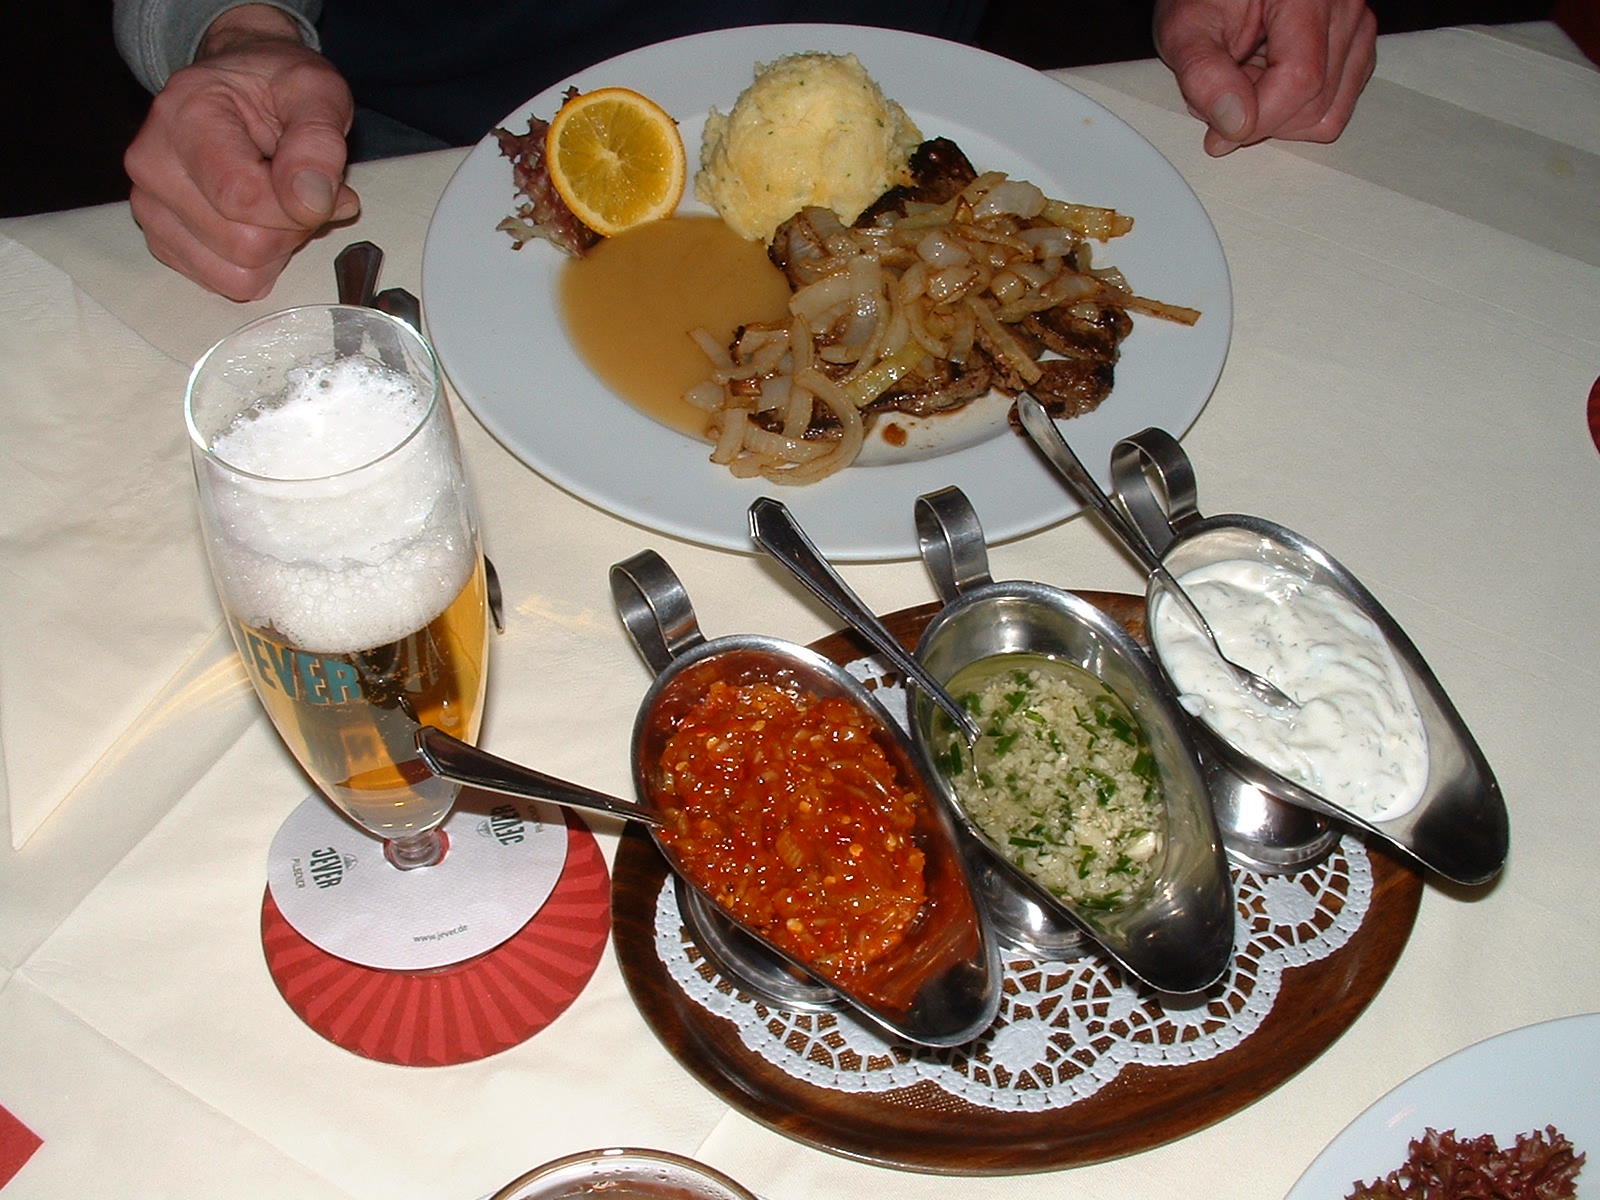 Rinderleber mit Püree, Röstzwiebeln und Apfelmus für 6,90 €
Die im Internet angebotenen Röstkartoffeln wurden nachgereicht. Dazu drei Soßen für alle Gäste am Tisch